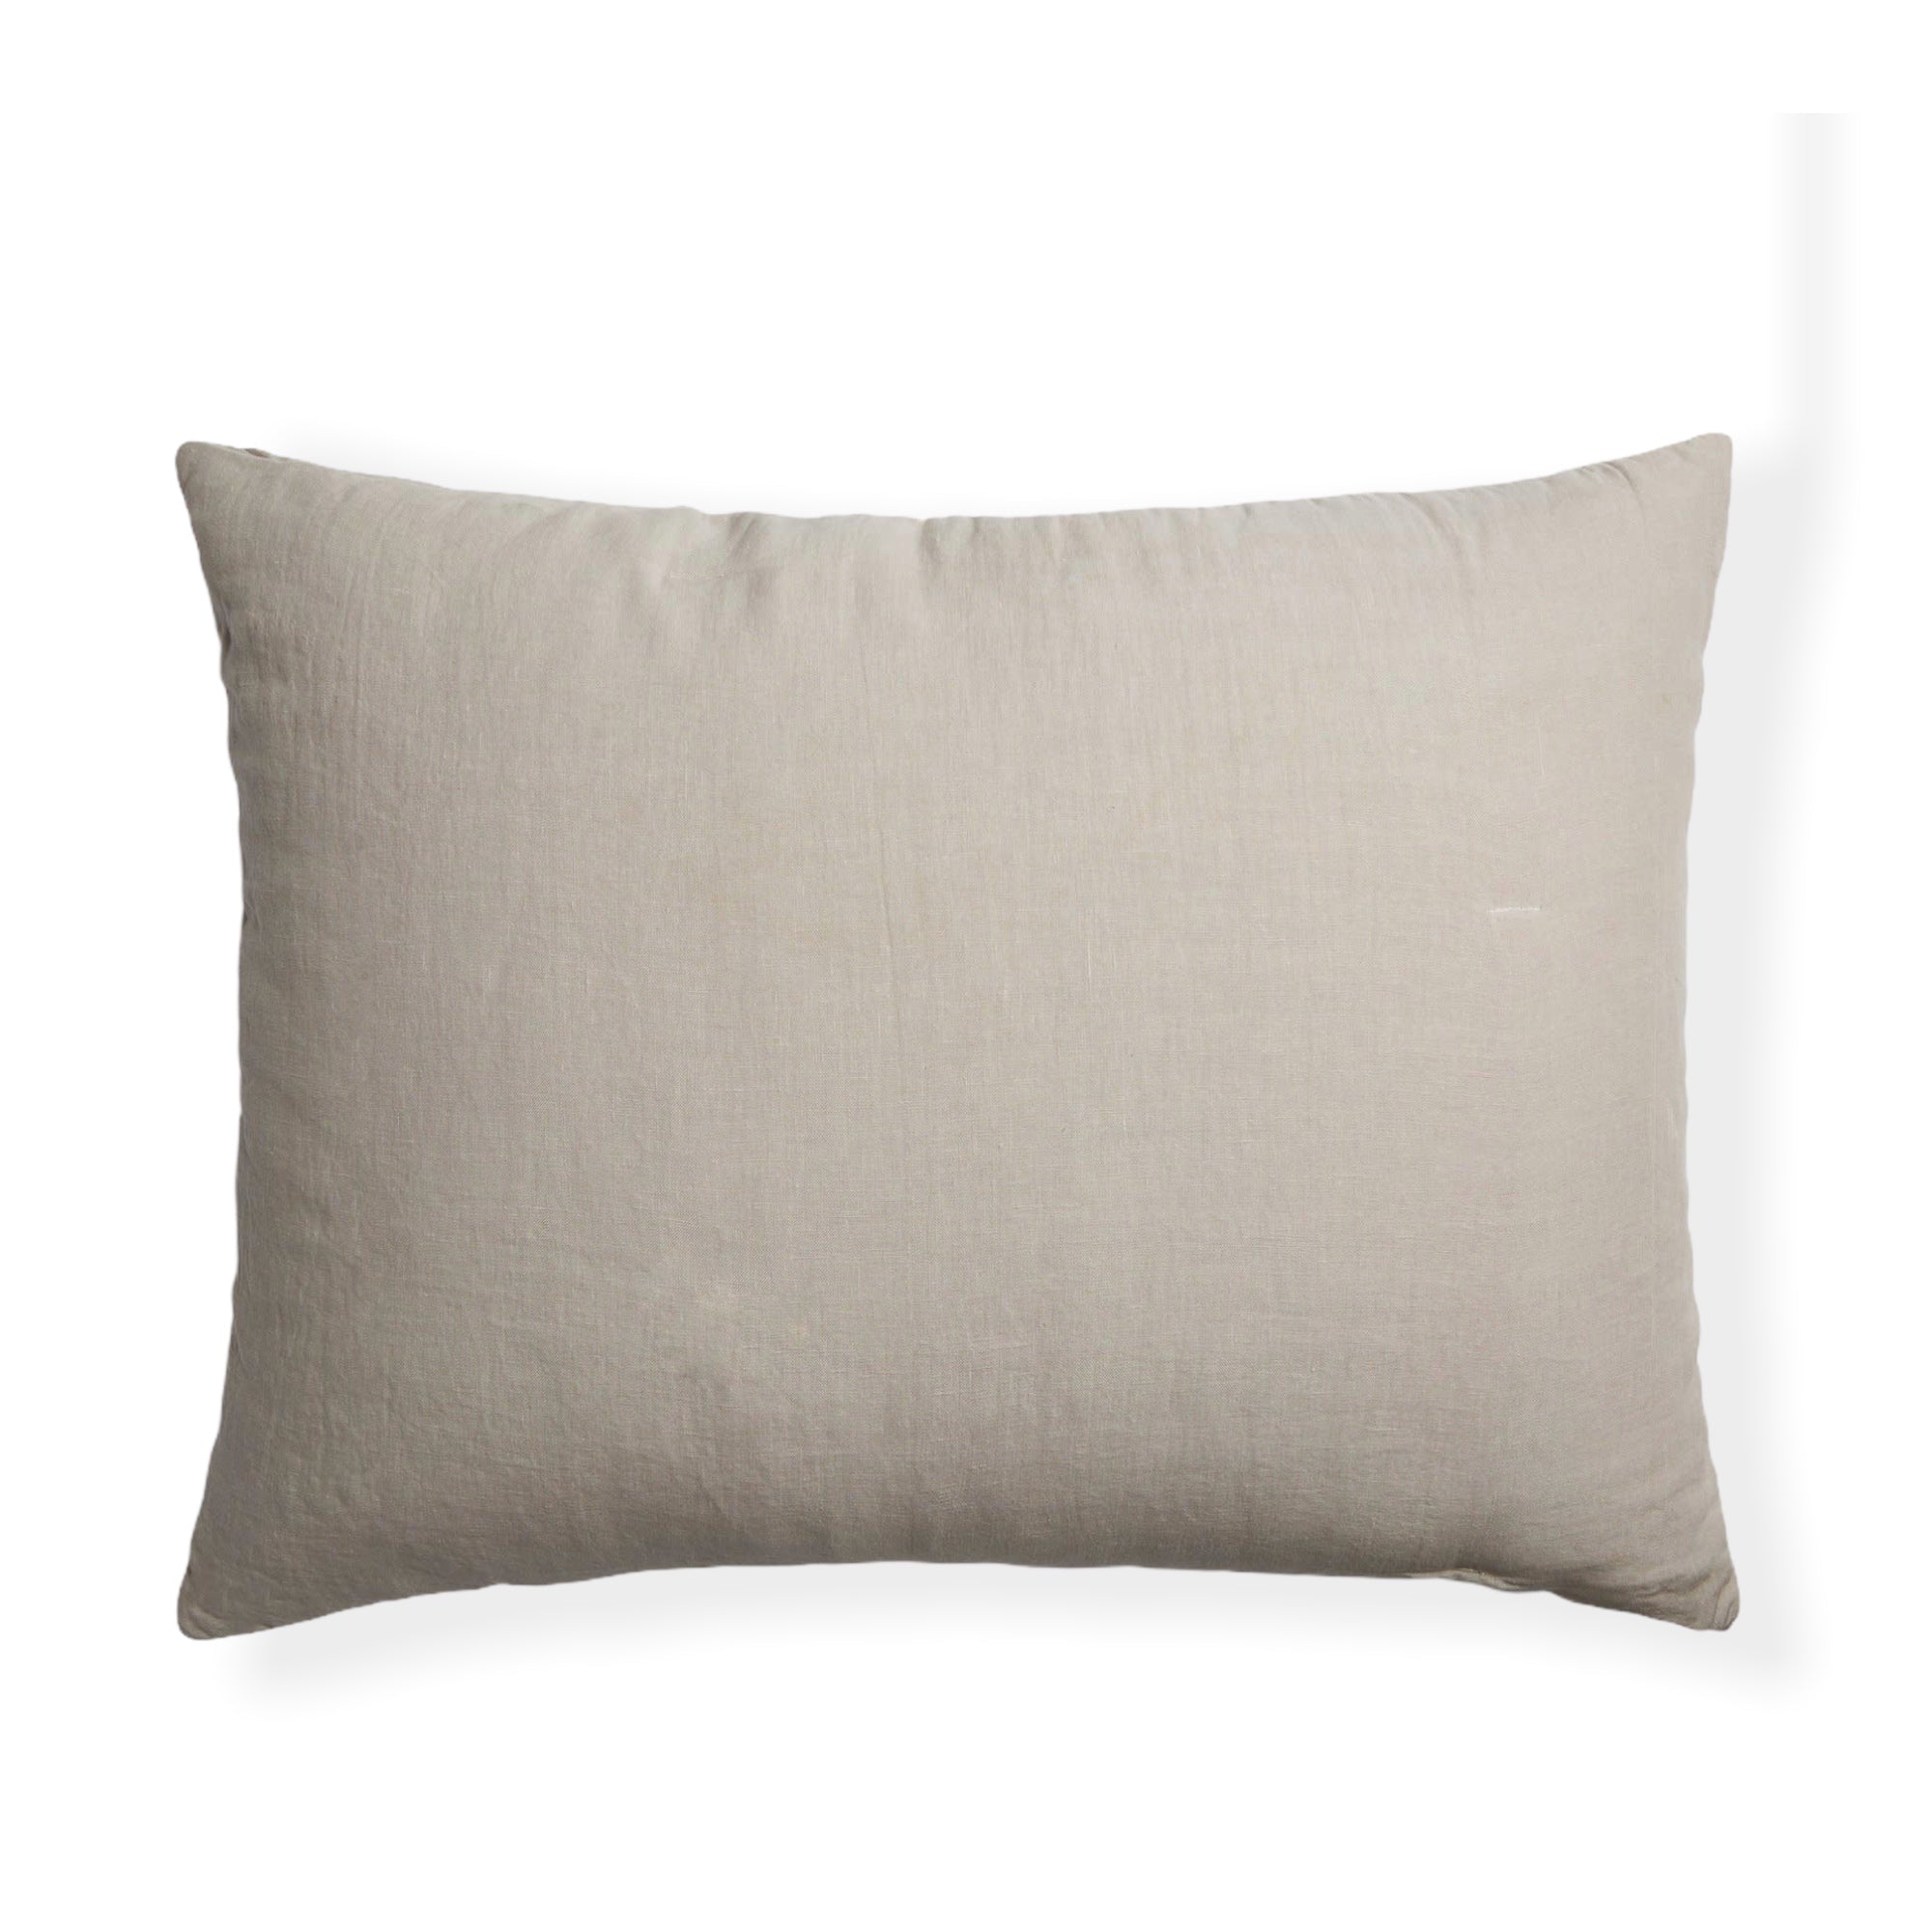 Allure Muslin Cotton 50x70 cm Pillow Cover Light Brown